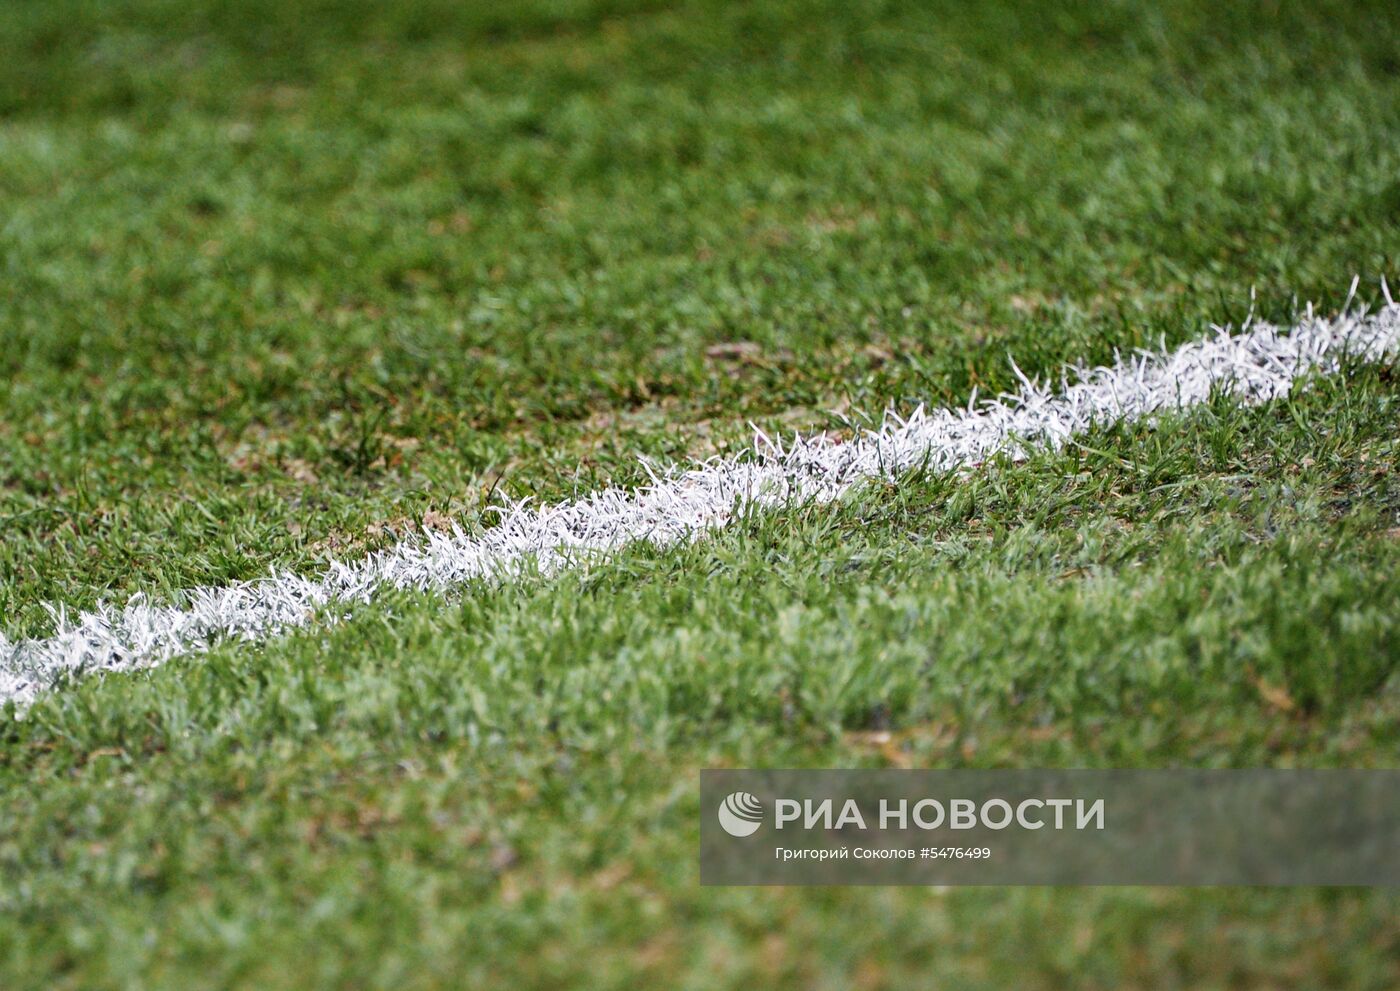 Футбол. Первый официальный матч на "Стадионе Нижний Новгород"